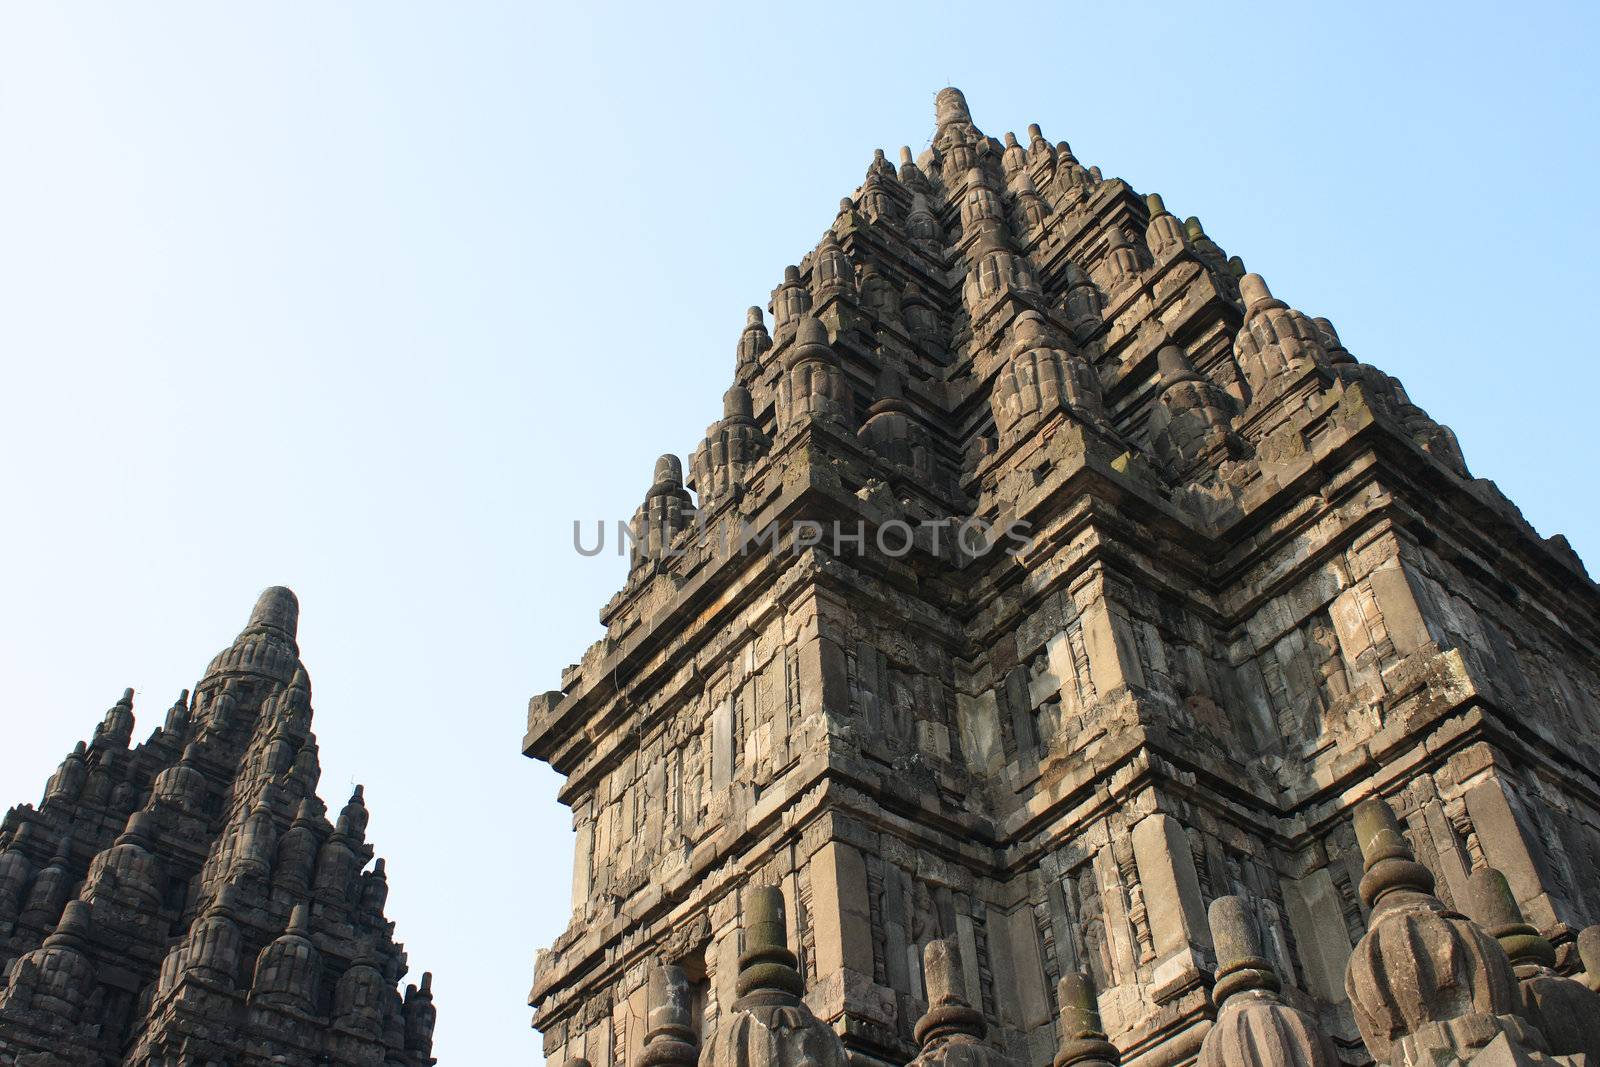 Hindu temple Prambanan by BengLim